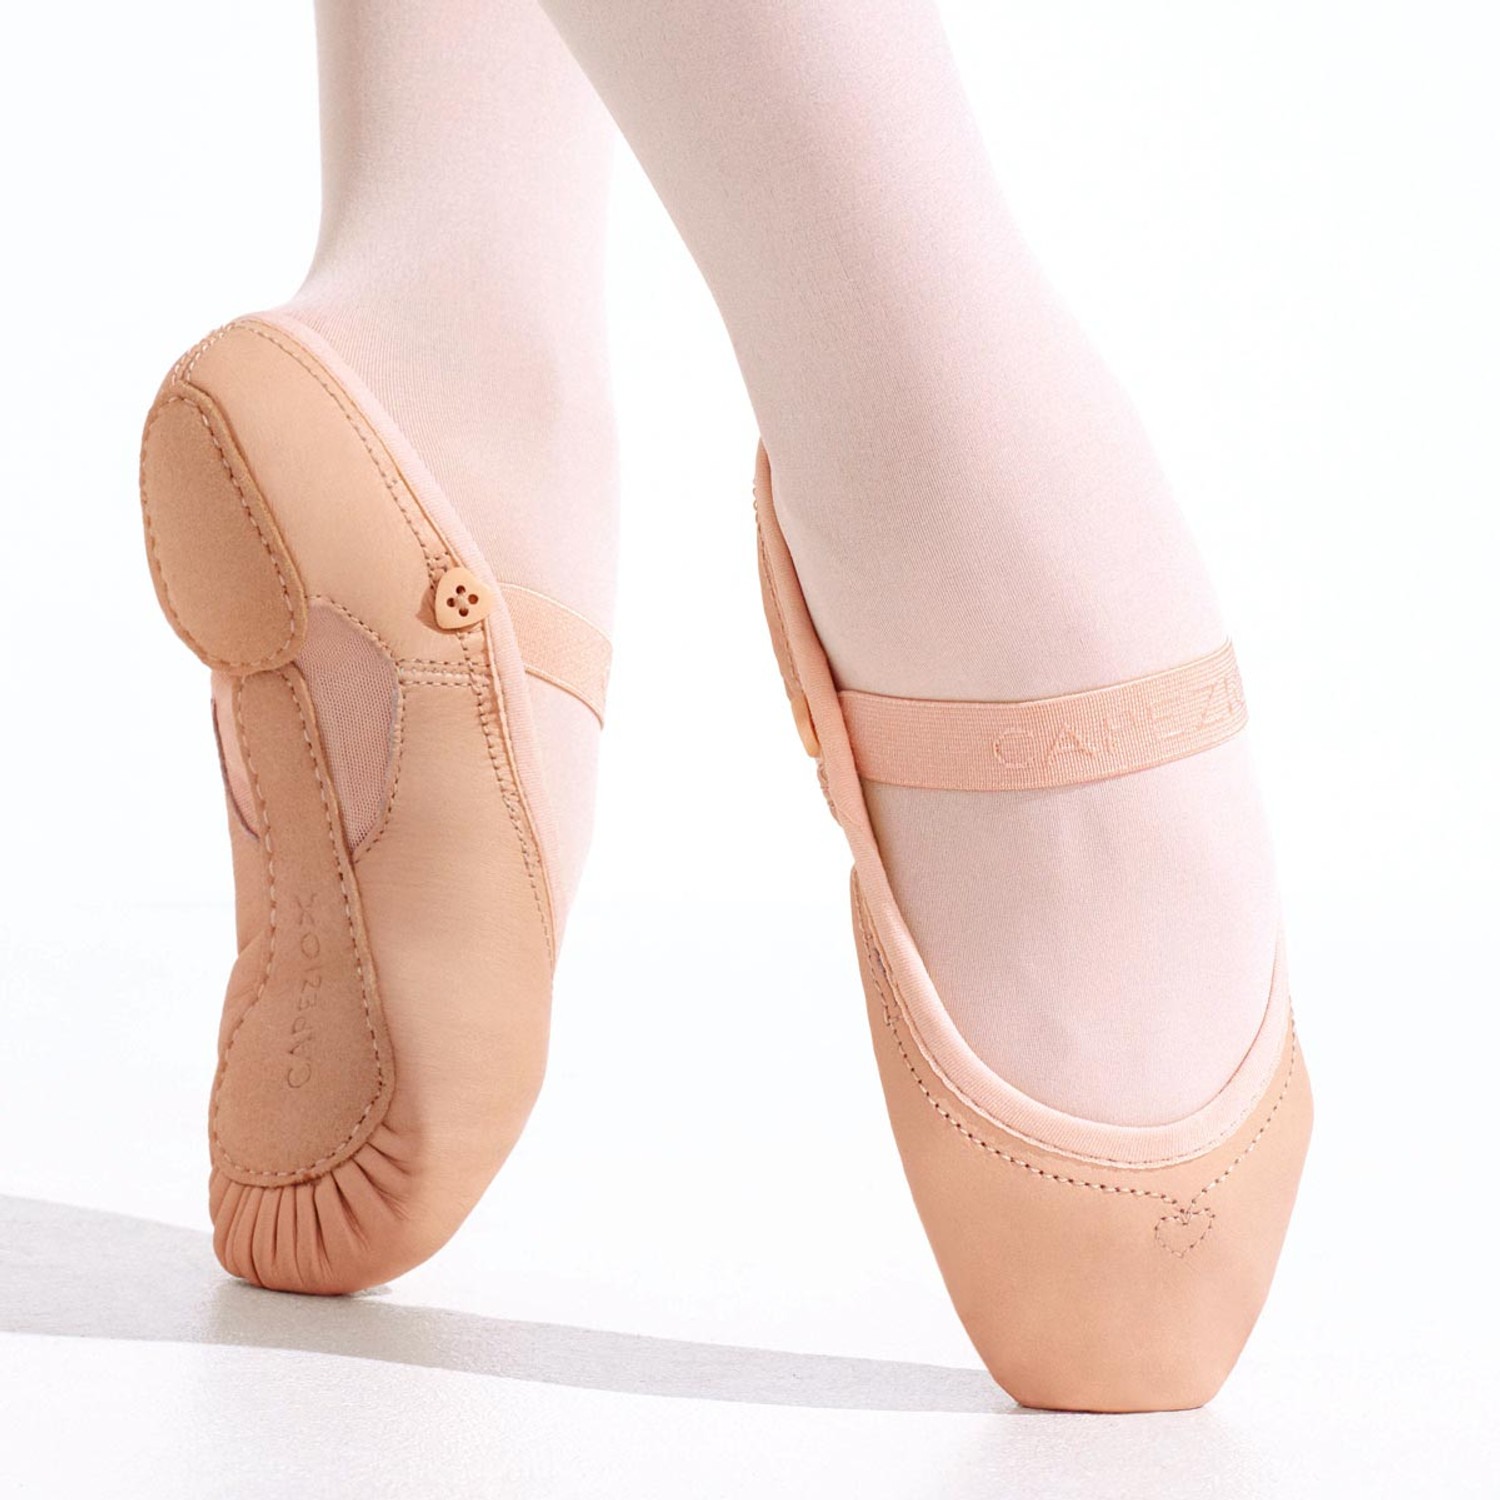 https://cdn11.bigcommerce.com/s-3327e/images/stencil/1500x1500/products/1384/11081/Capezio-Love-Ballet-Full-Sole-Ballet-Shoes-Childrens-2035C__99267.1541812163.jpg?c=2